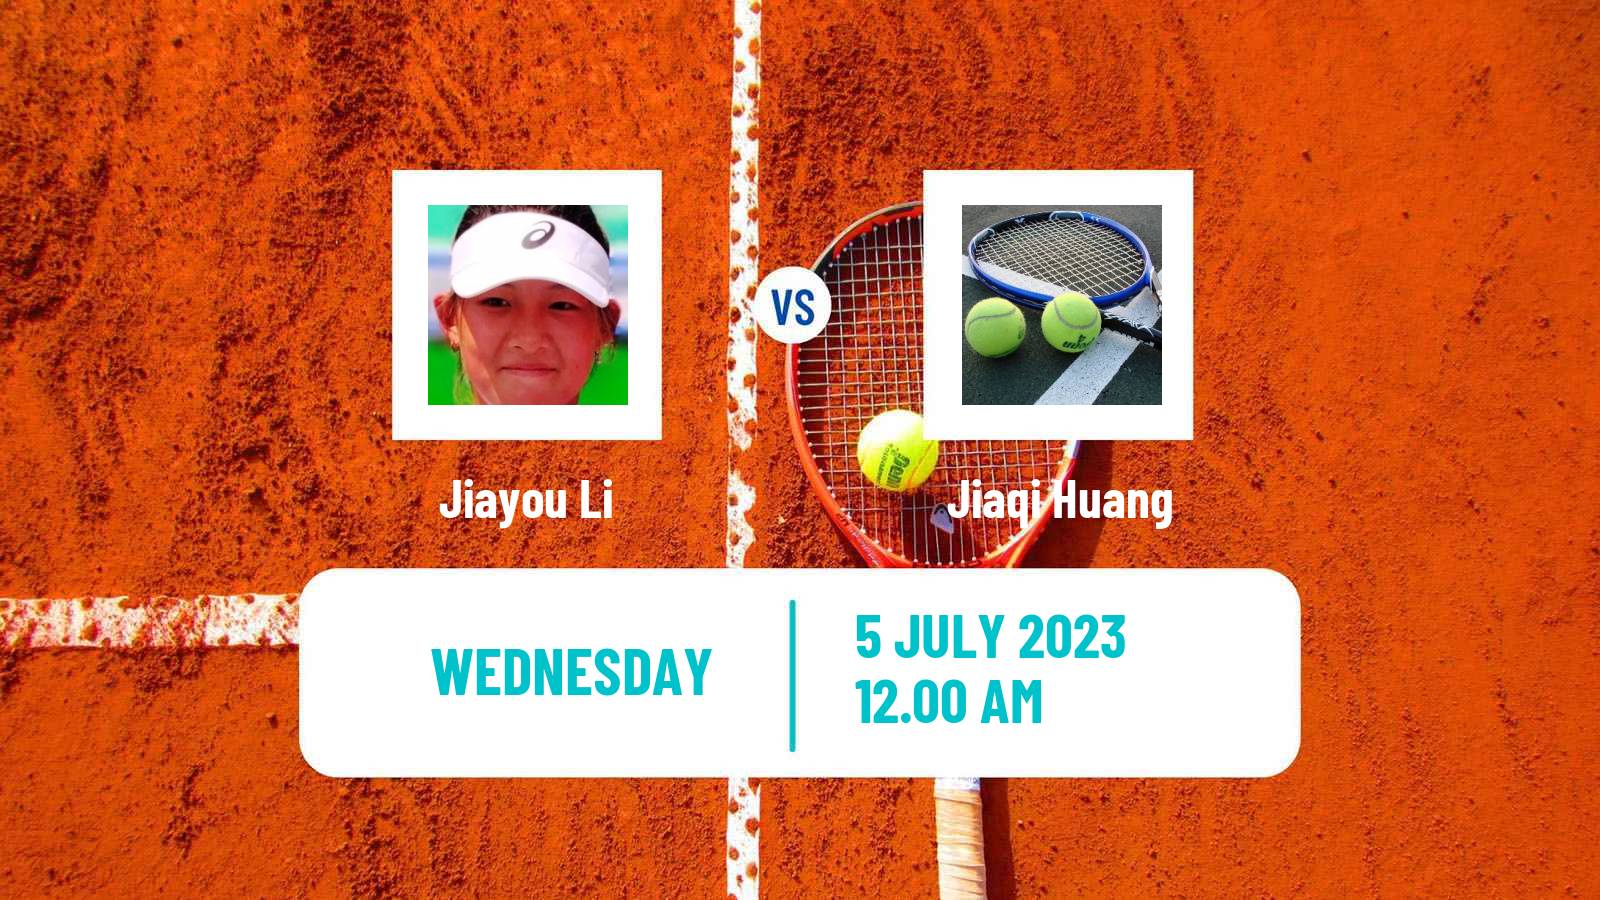 Tennis ITF W15 Tianjin 4 Women Jiayou Li - Jiaqi Huang